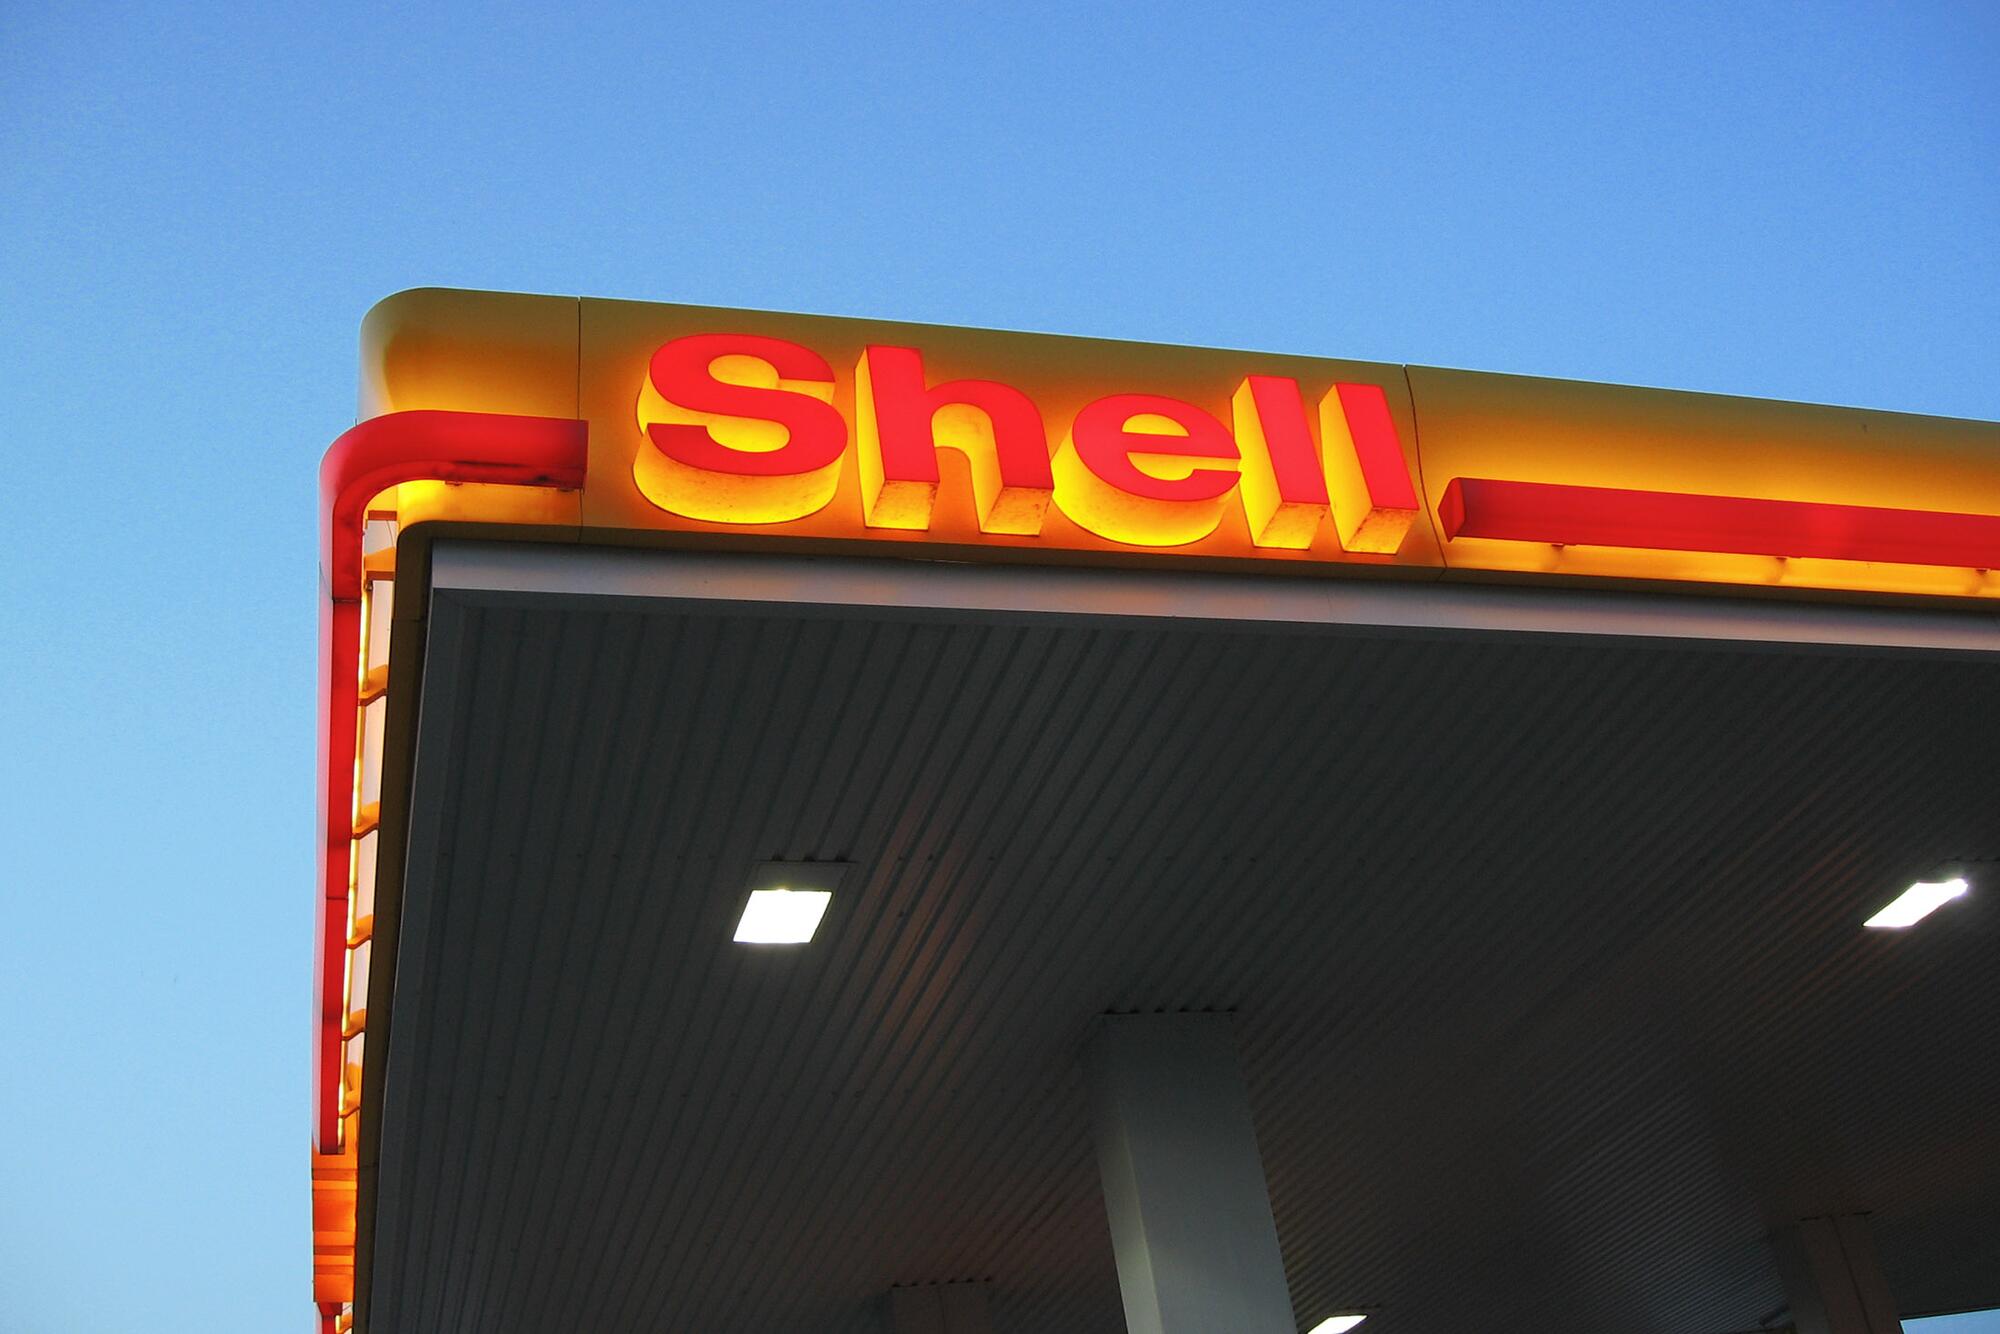 Gasolinera Shell